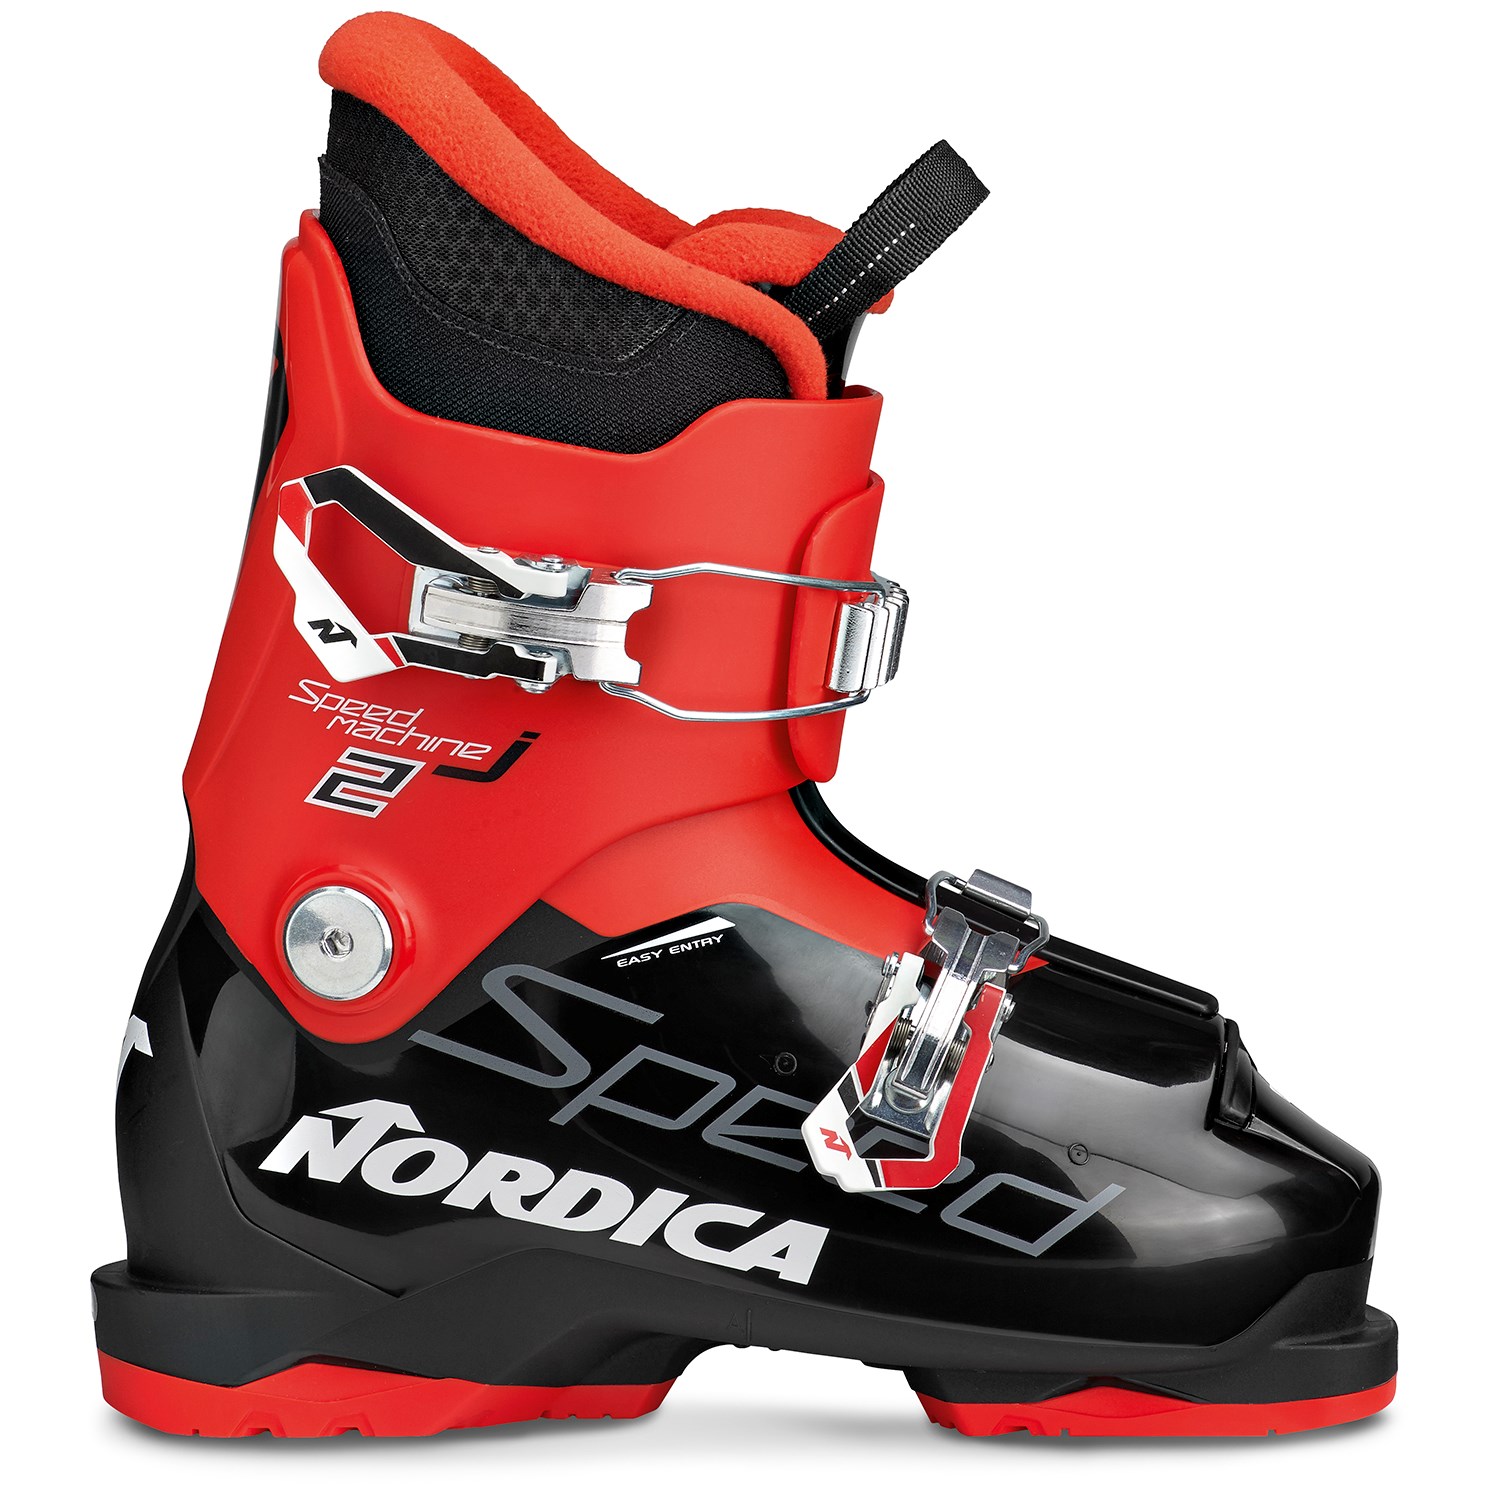 nordica downhill skis